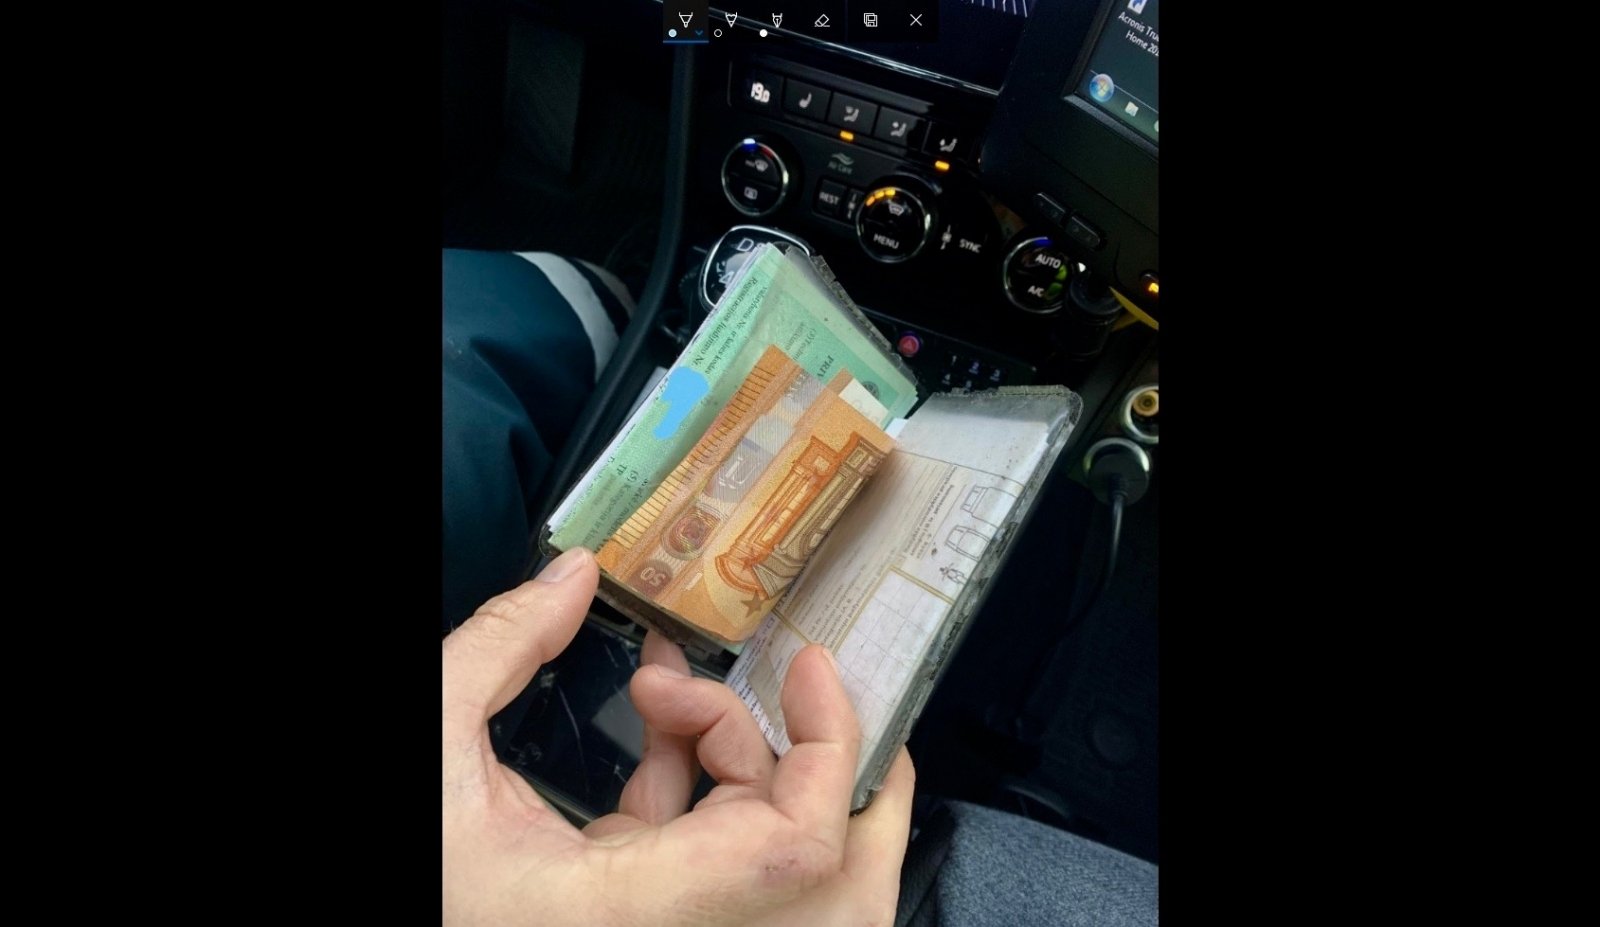 Girtas vairuotojas pareigūnams siūlė 500 eurų kyšį, 260 eurų bruko iškart